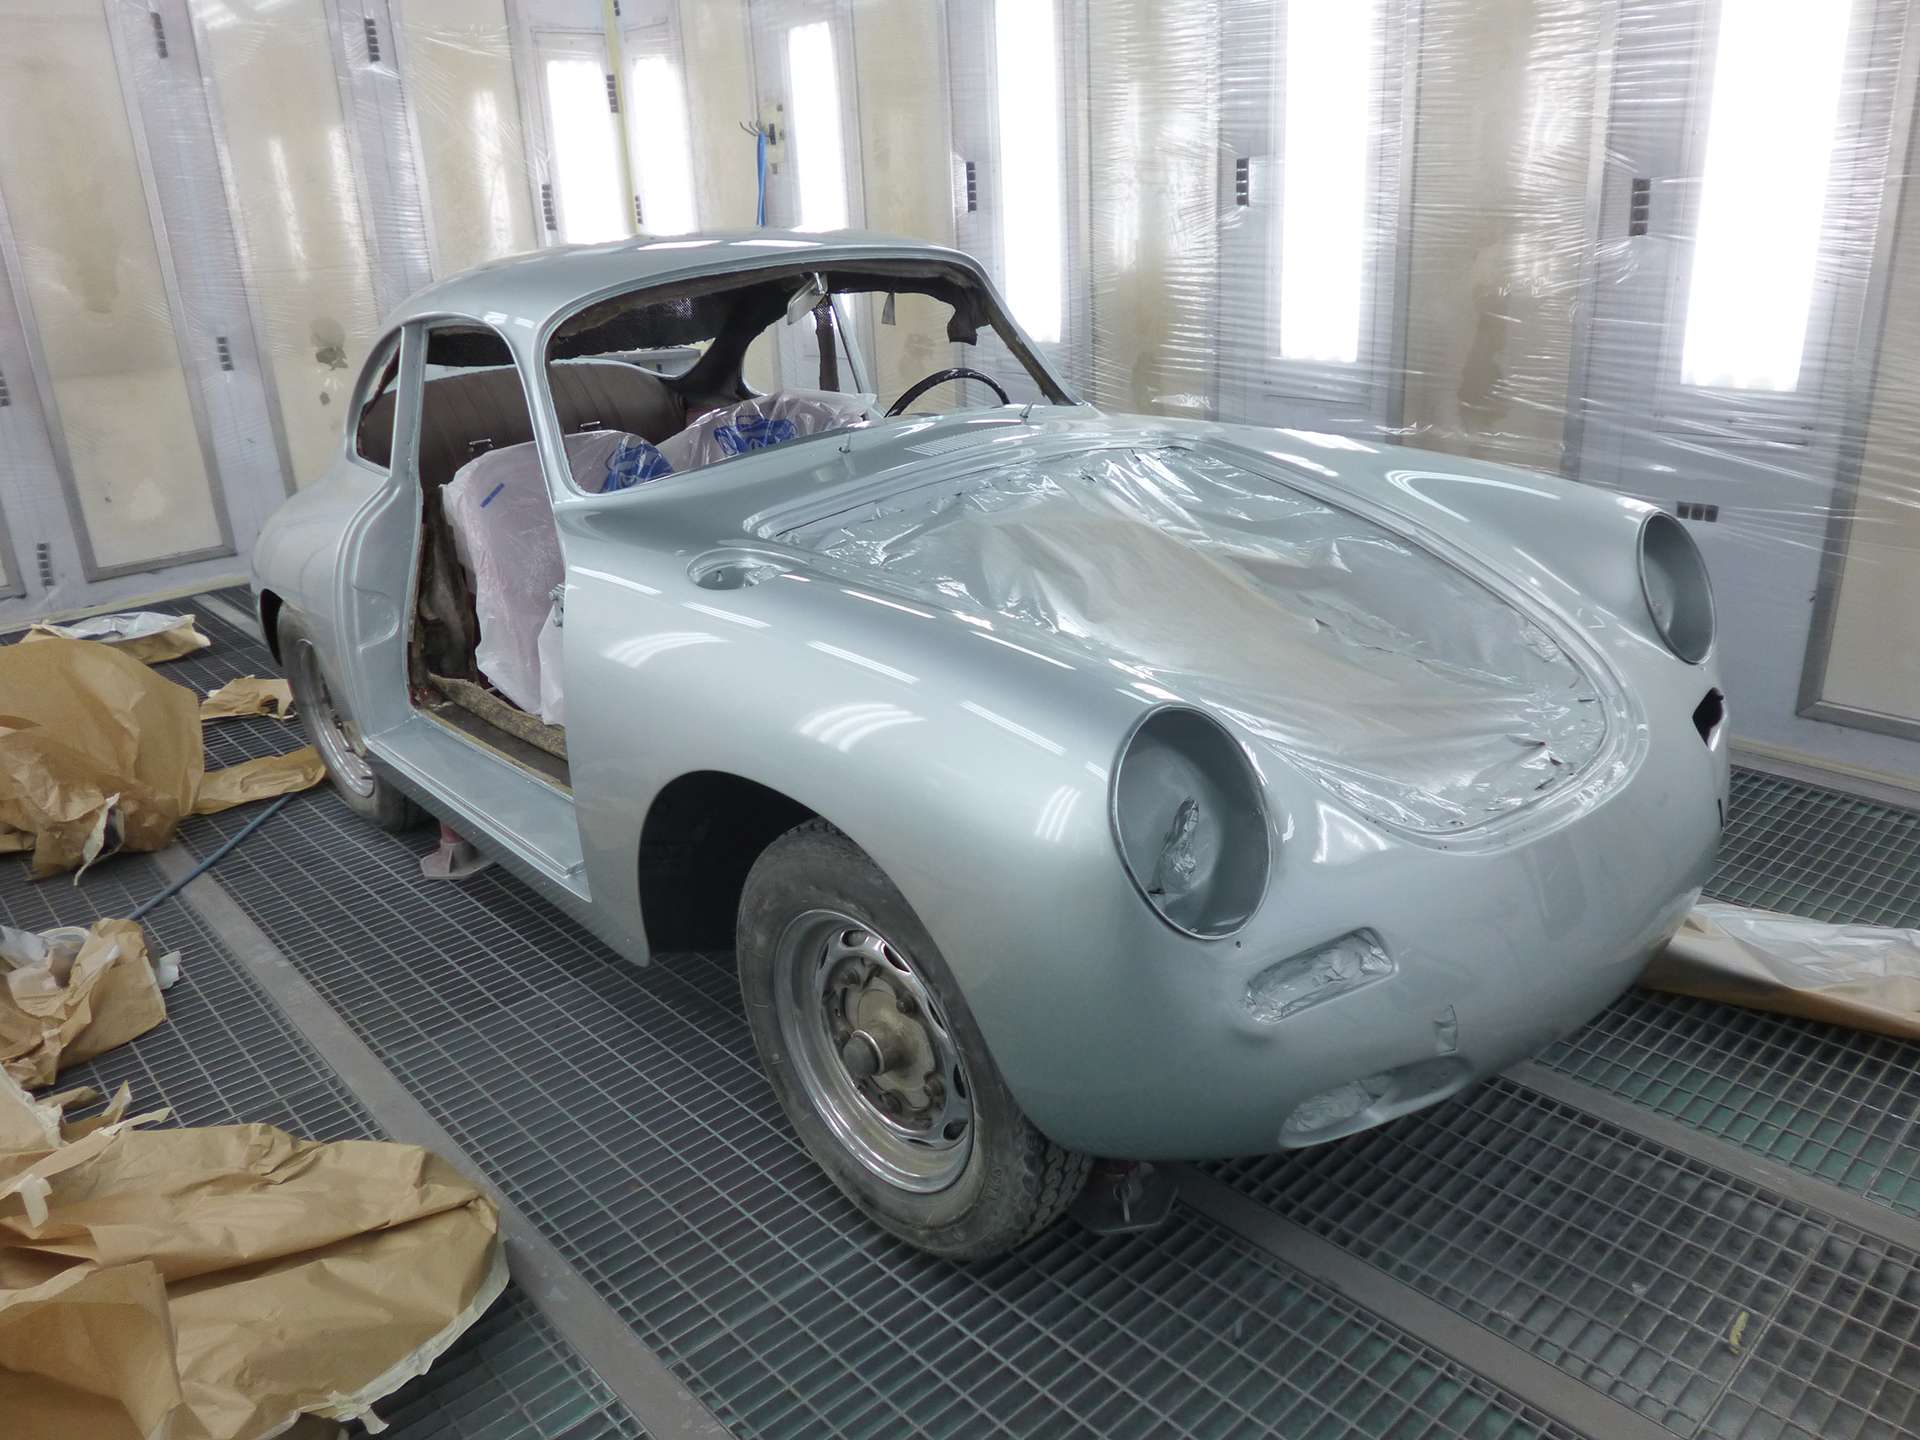 Restauration d'une ancienne voiture Porsche dans la cabine de gyclage de la carrosserie Binggeli